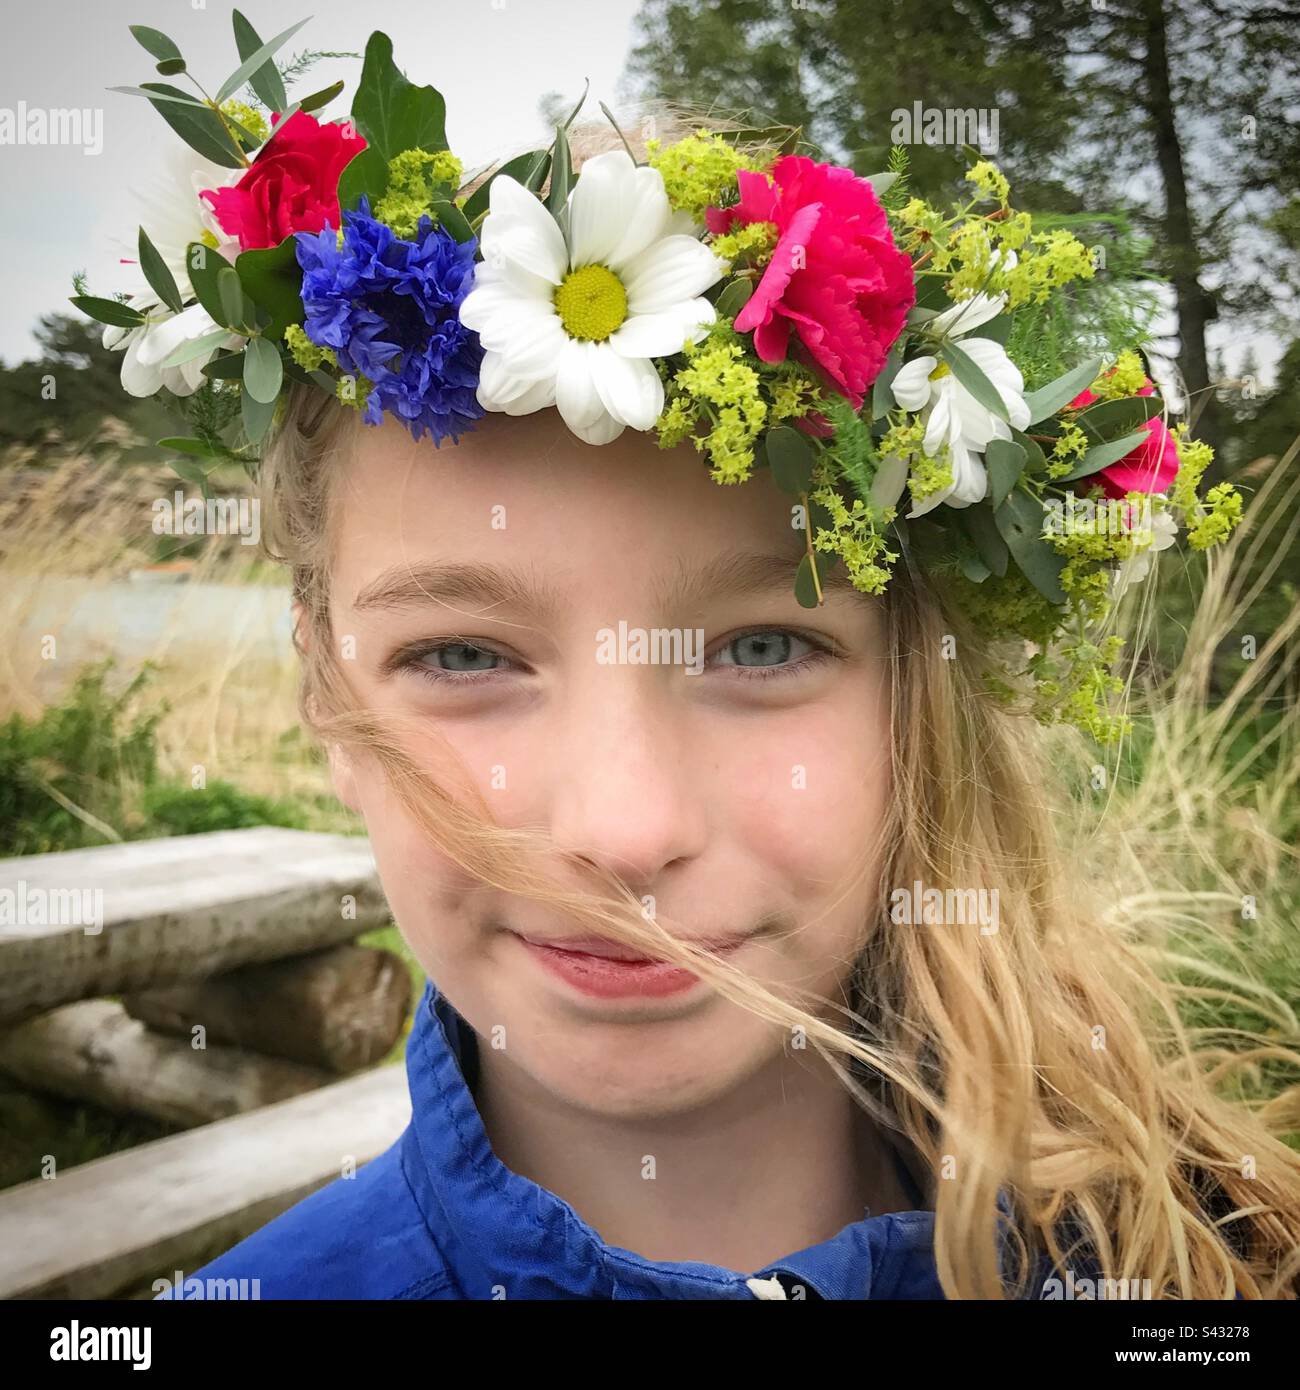 Giovane nordica ragazza scandinava in una tradizionale corona floreale di fiori (conosciuta come corona di corona o cappelletto) indossata durante la festa di mezza estate Foto Stock